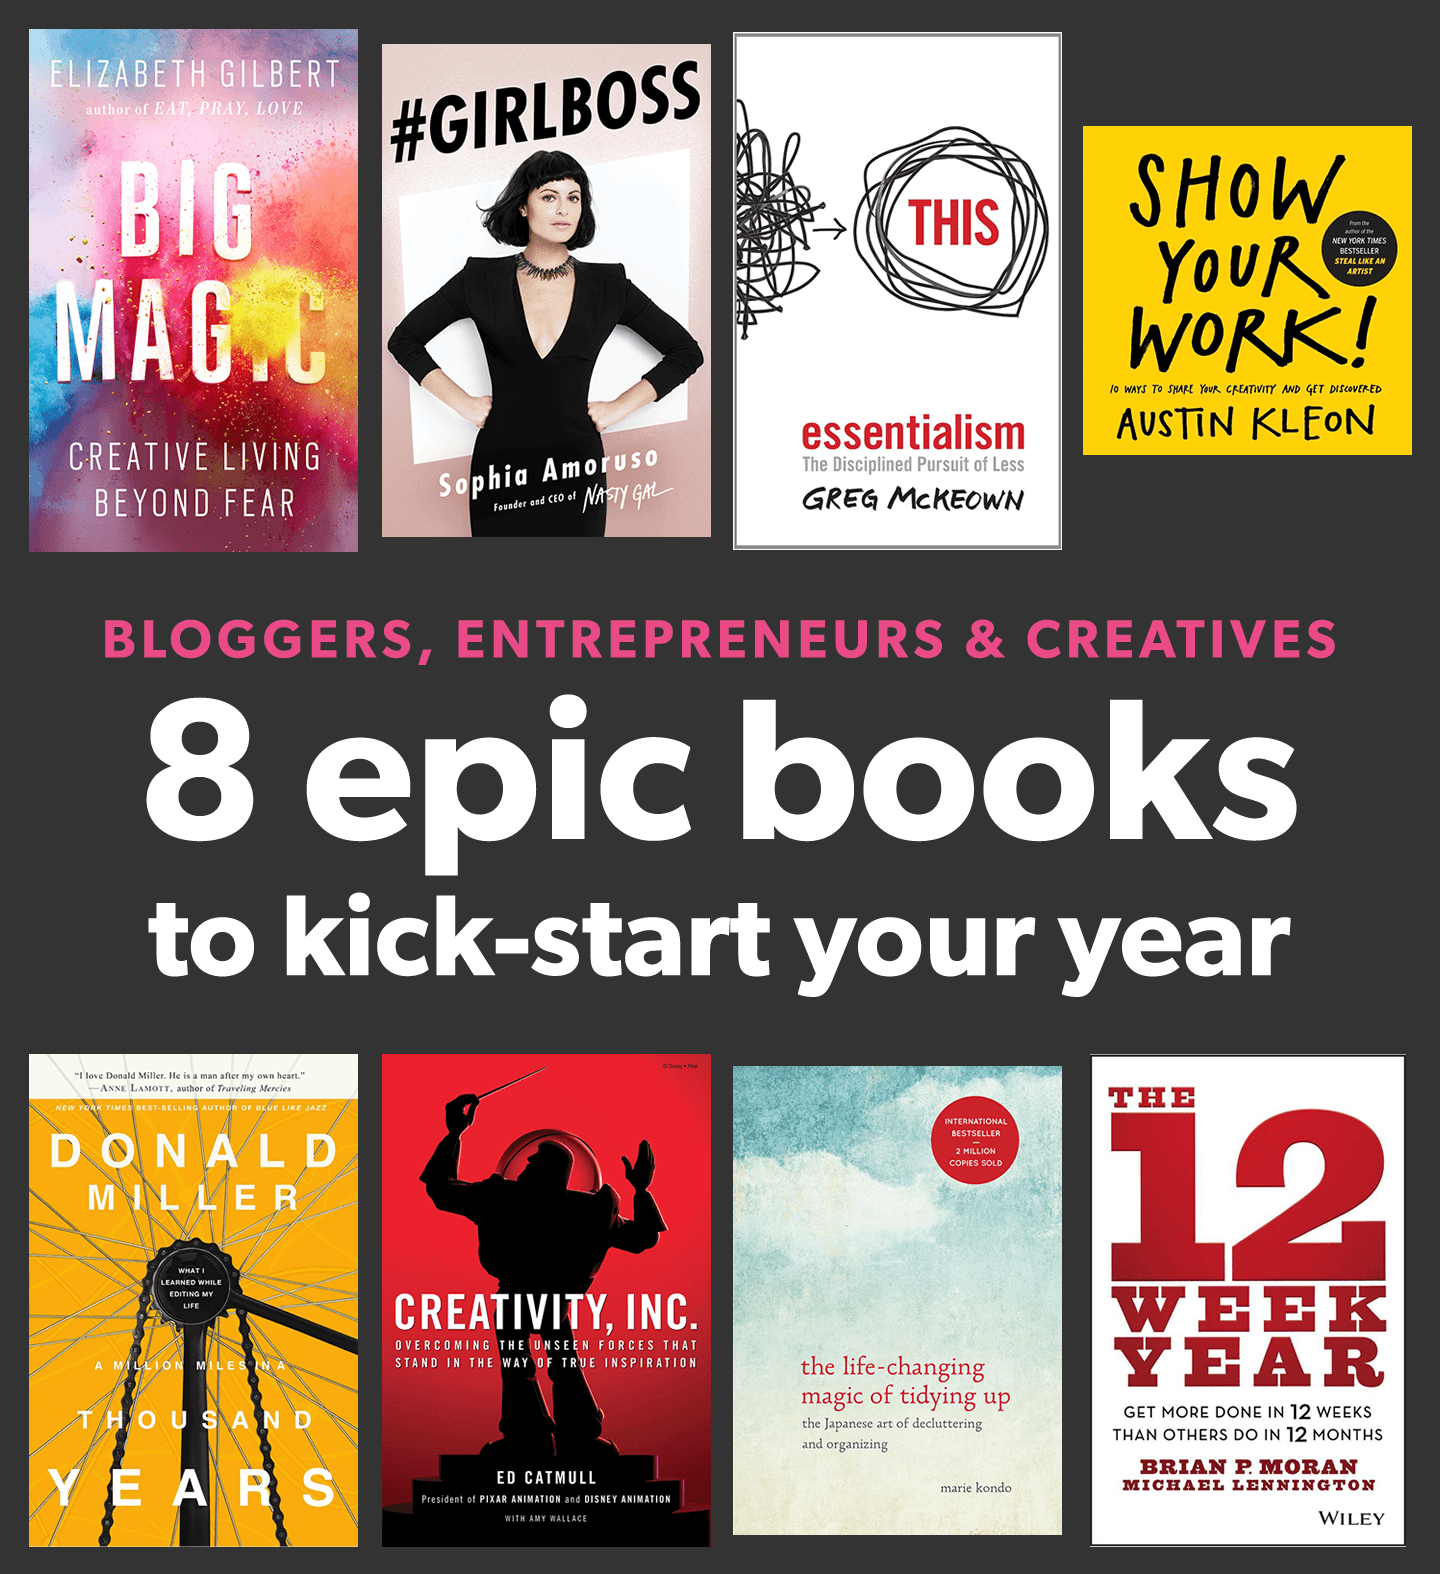 八大书面向创业者、biz所有者、创举者及博客阅读启动#book#business#creativity#